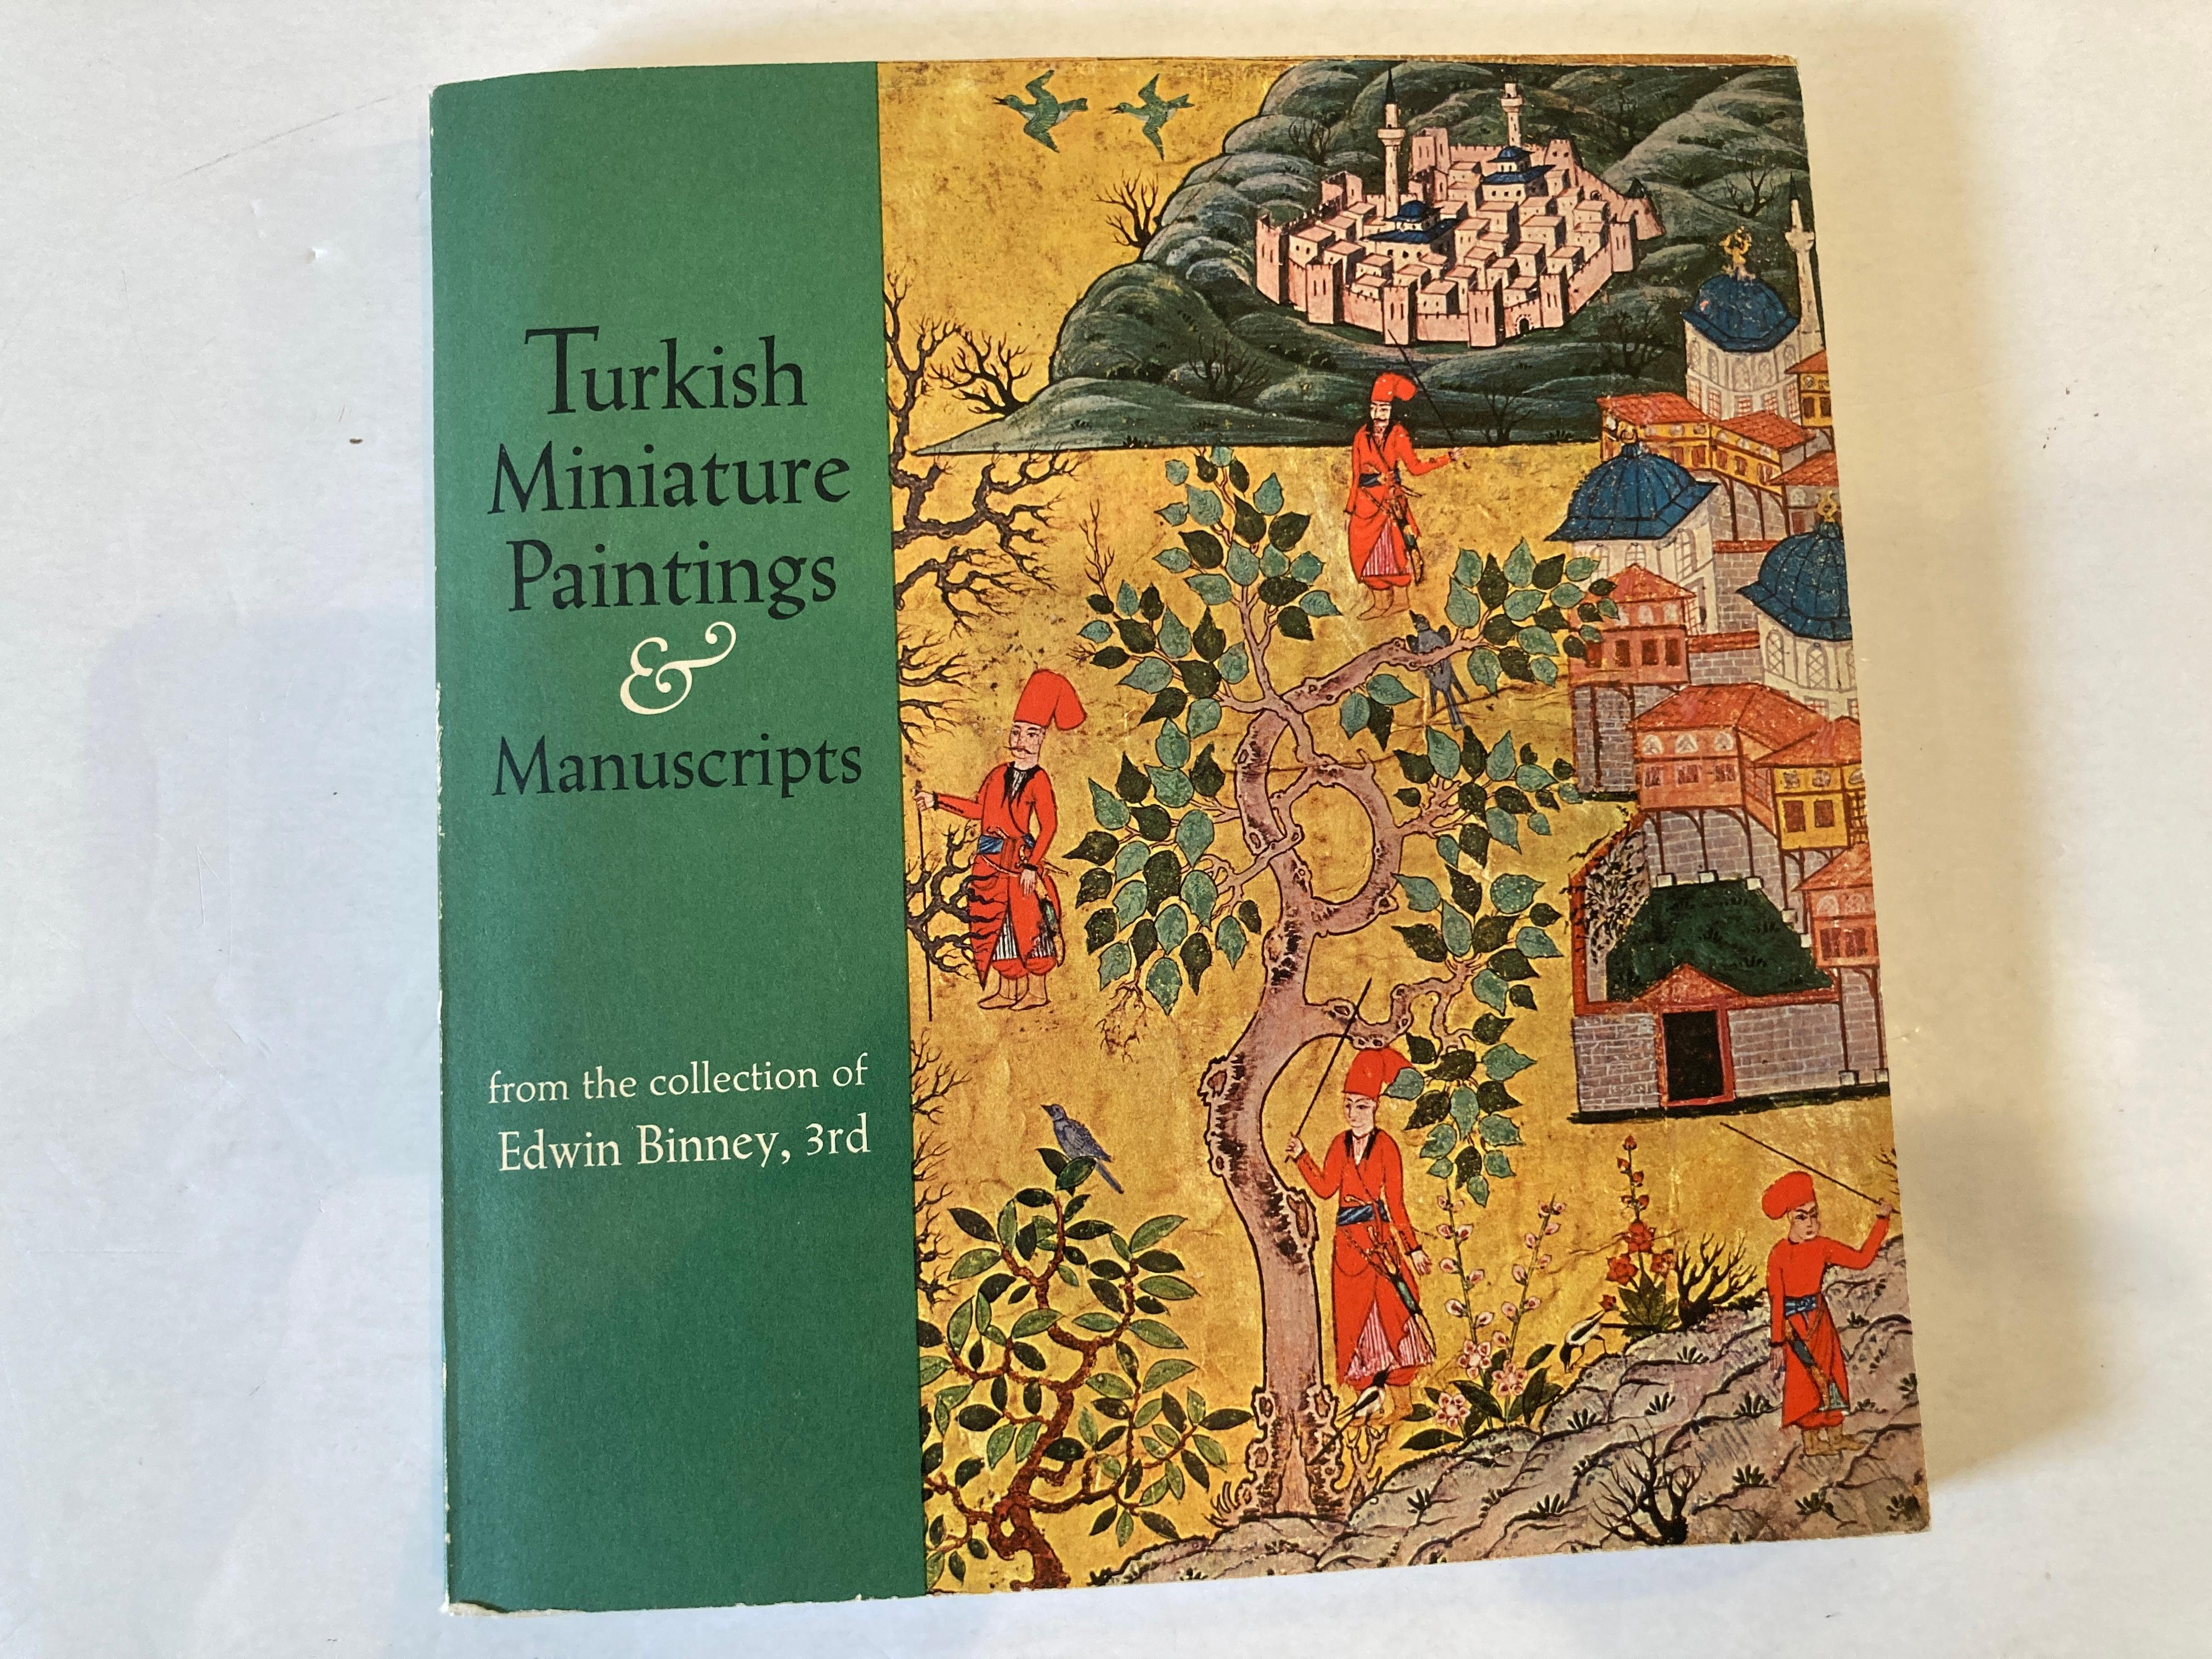 Peintures miniatures et manuscrits turcs de la collection d'Edwin Binney, 
Binney, Edwin (1973)
Les exemples d'arts picturaux turcs en dehors de la bibliothèque de Topkapu Saray à Istanbul sont rares - un fait bien connu que le Dr Binney démontre